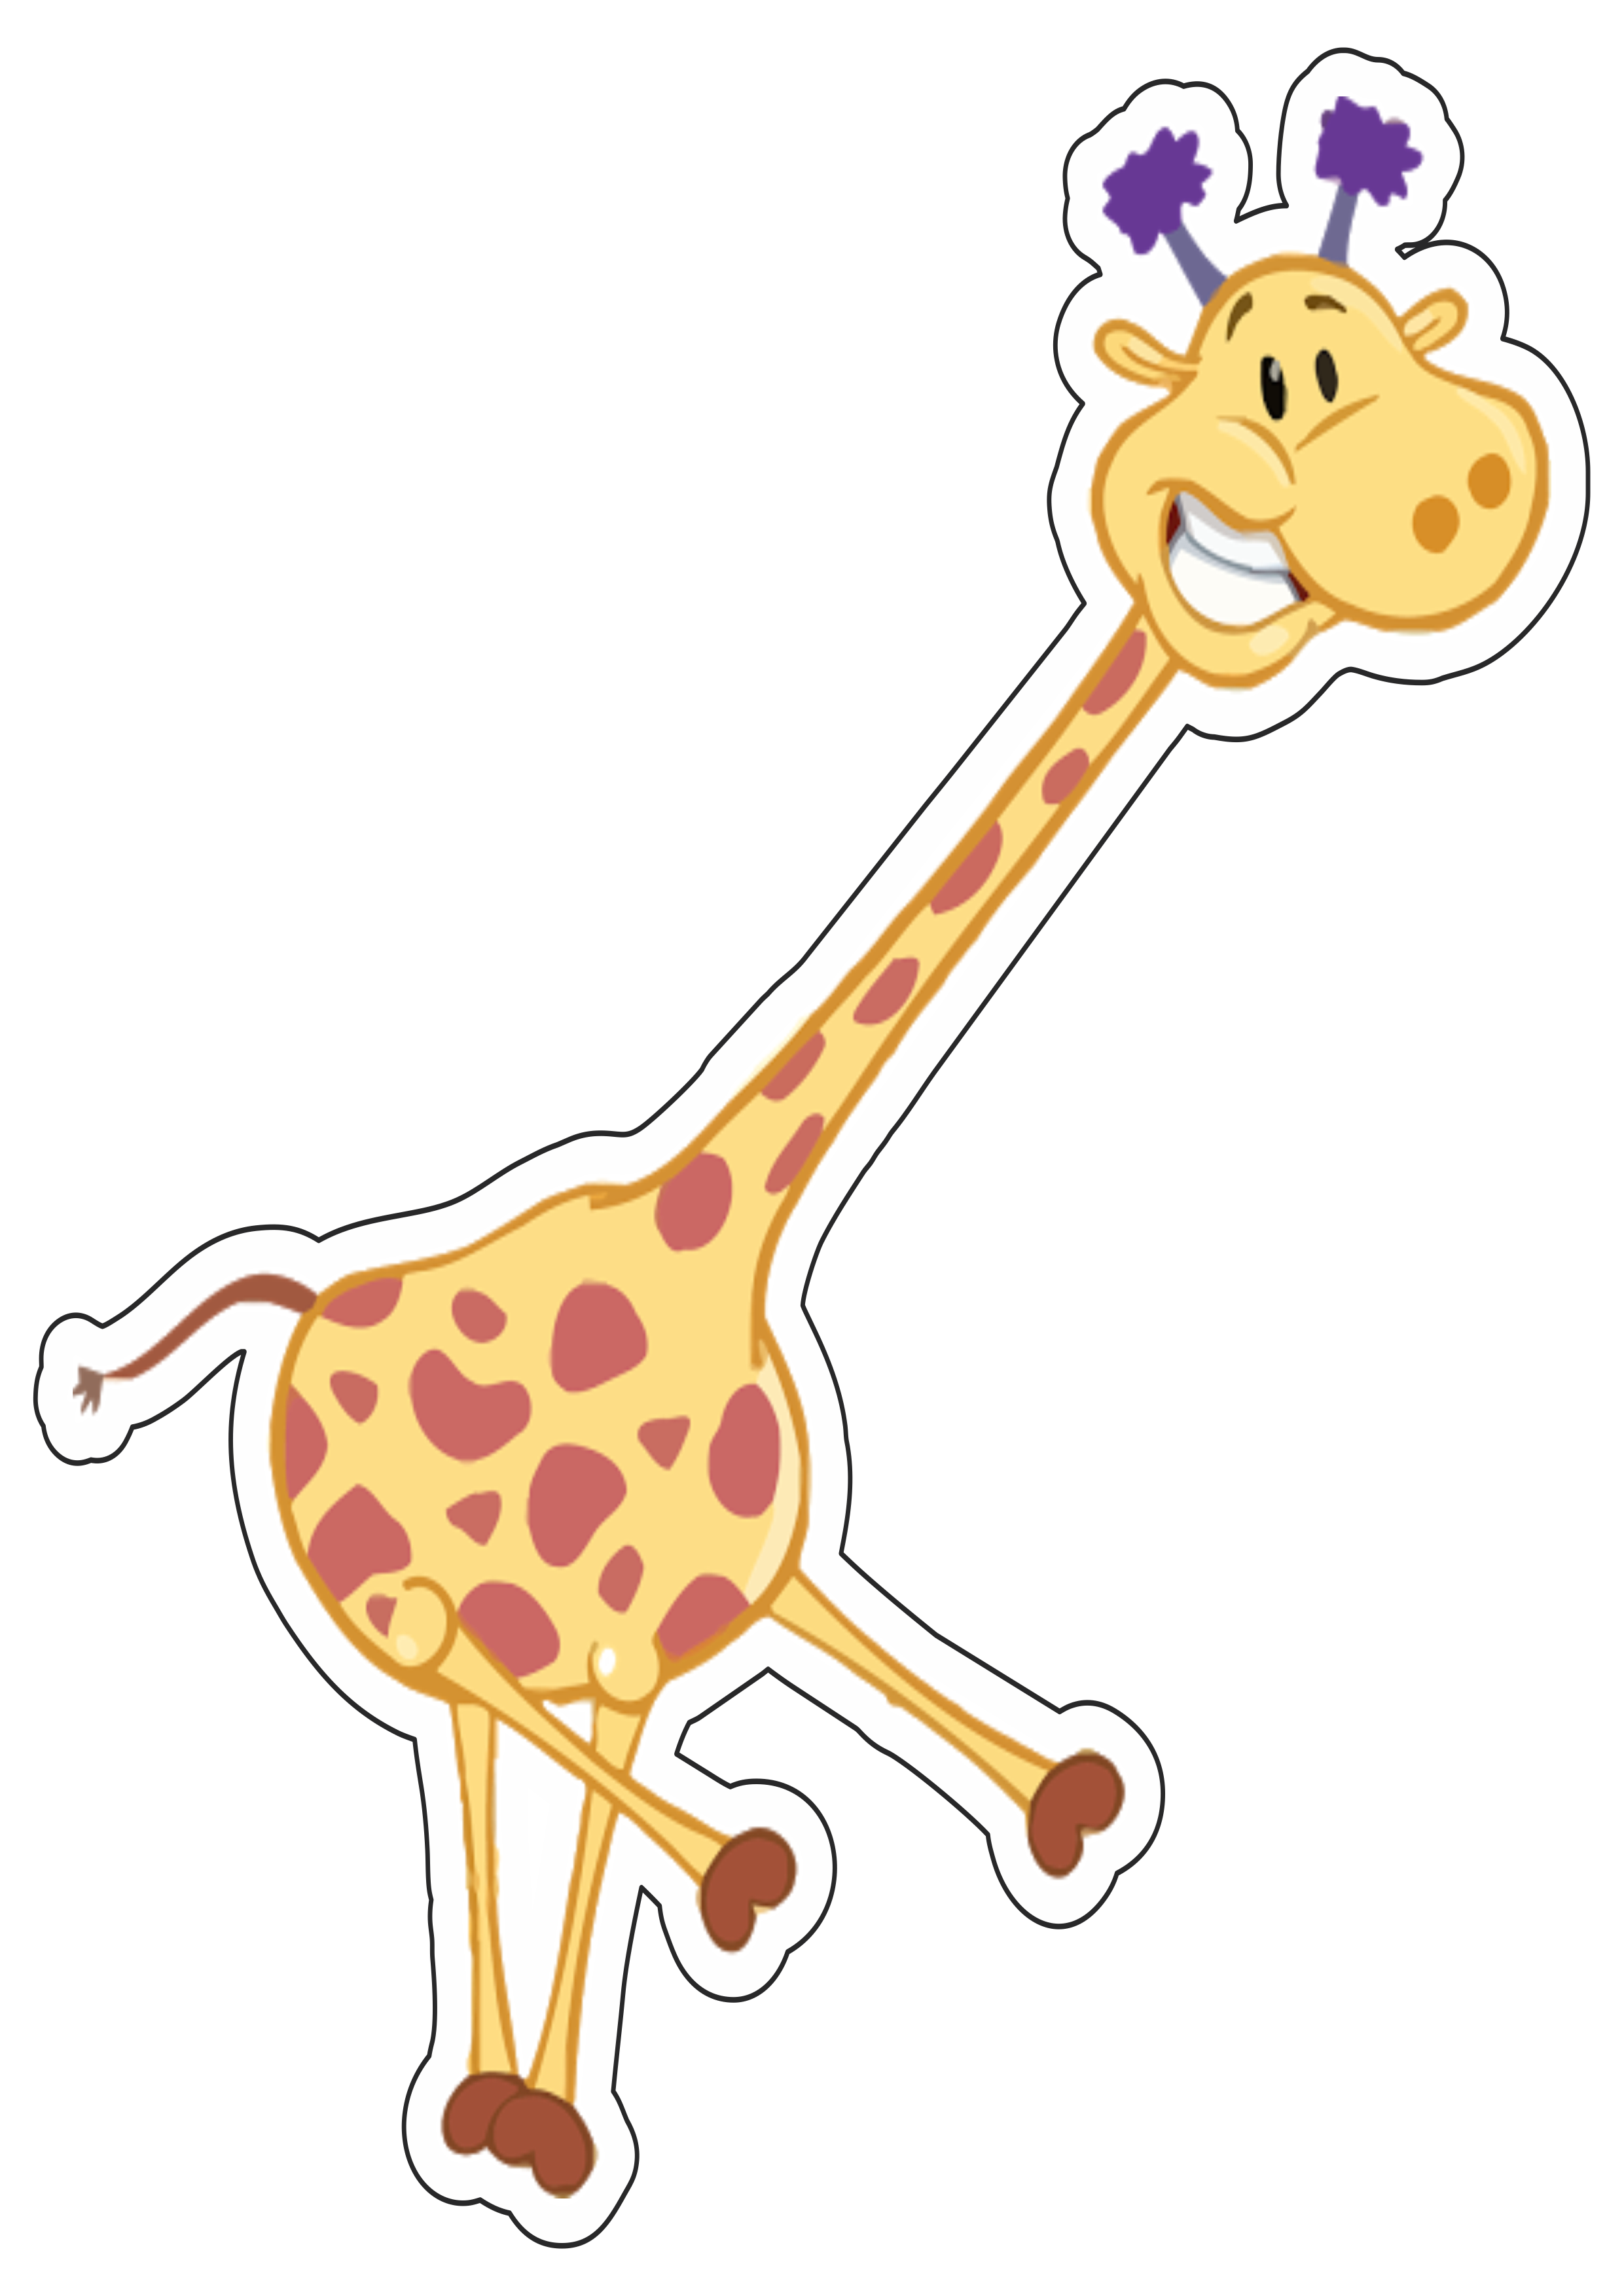 Galinha pintadinha girafa personagem fictício infantil músicas divertidas para criança colorida imagem com contorno png